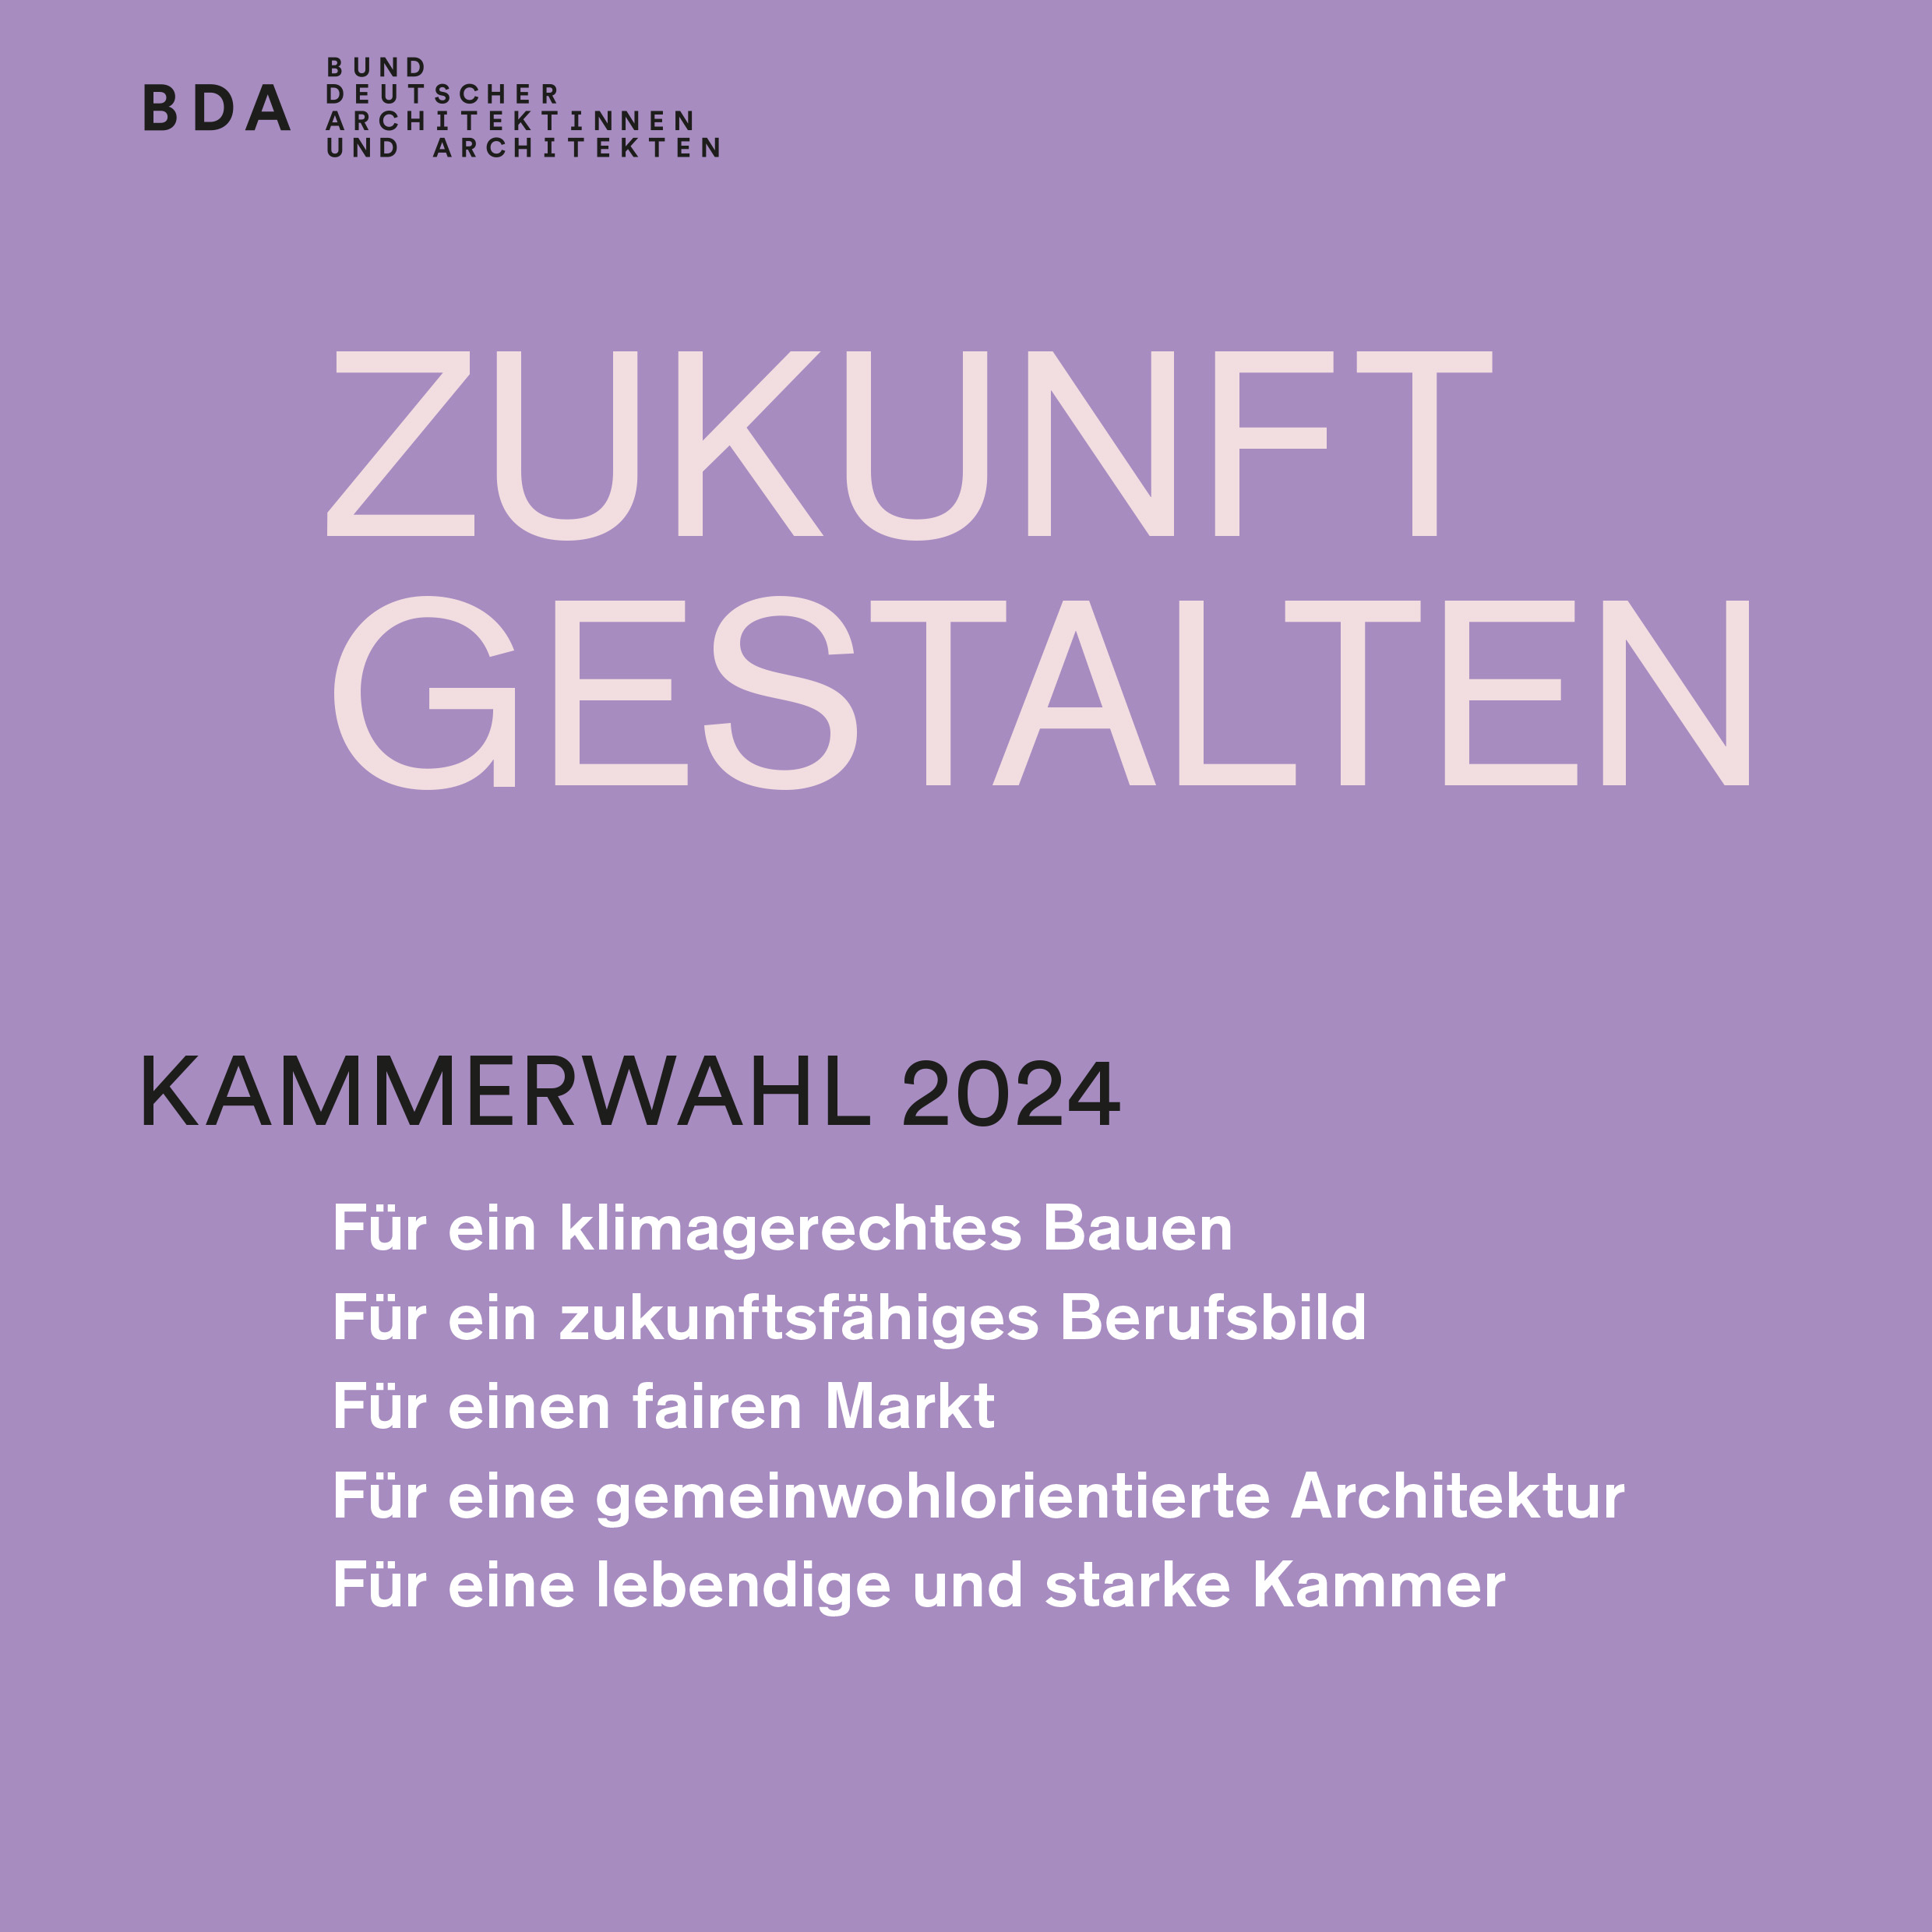 kammerwahl-akh-bda-2024-ffm-architekten